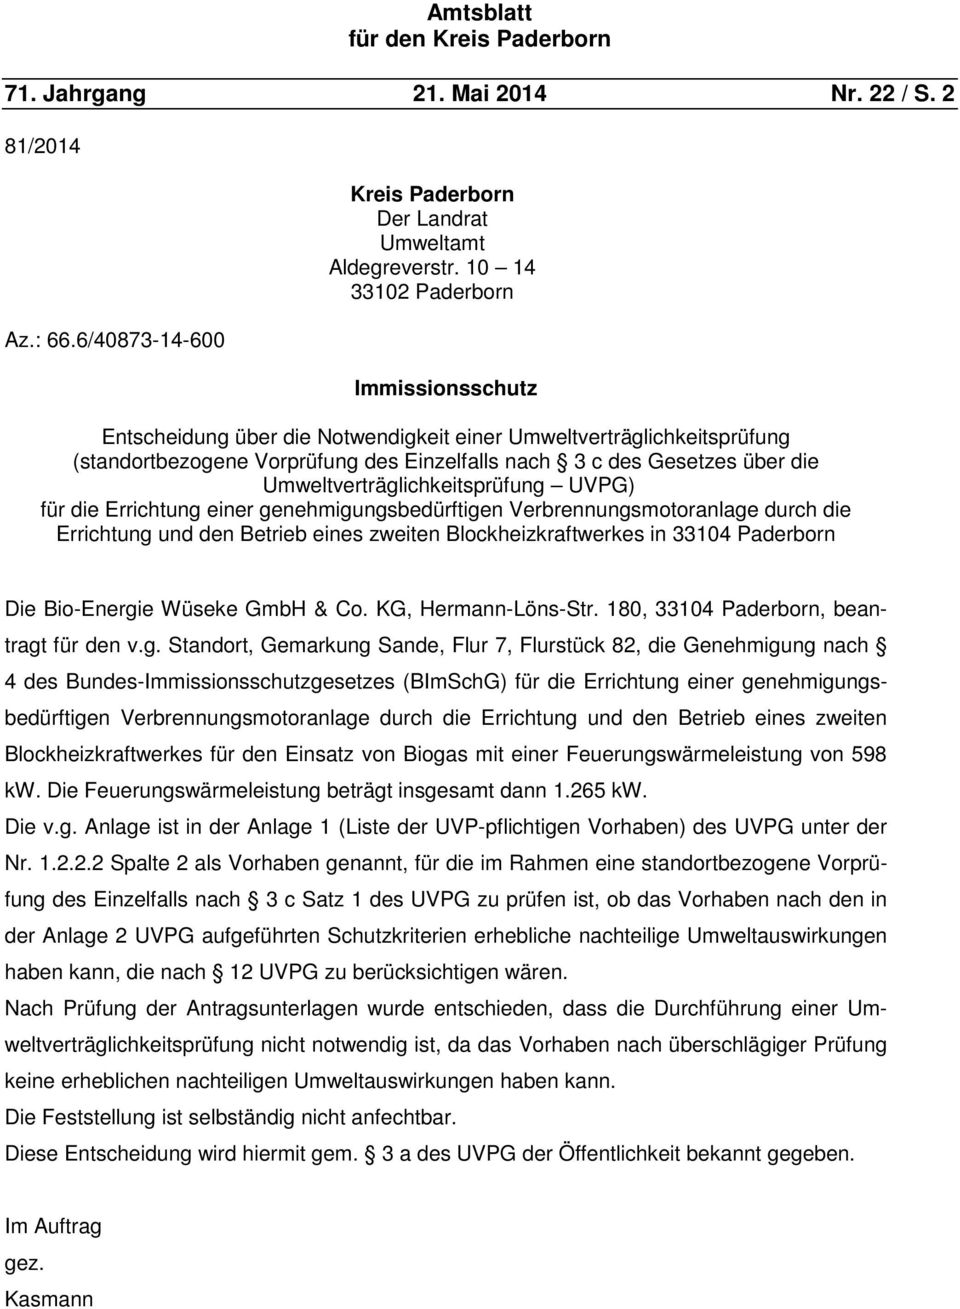 Umweltverträglichkeitsprüfung UVPG) für die Errichtung einer genehmigungsbedürftigen Verbrennungsmotoranlage durch die Errichtung und den Betrieb eines zweiten Blockheizkraftwerkes in 33104 Paderborn